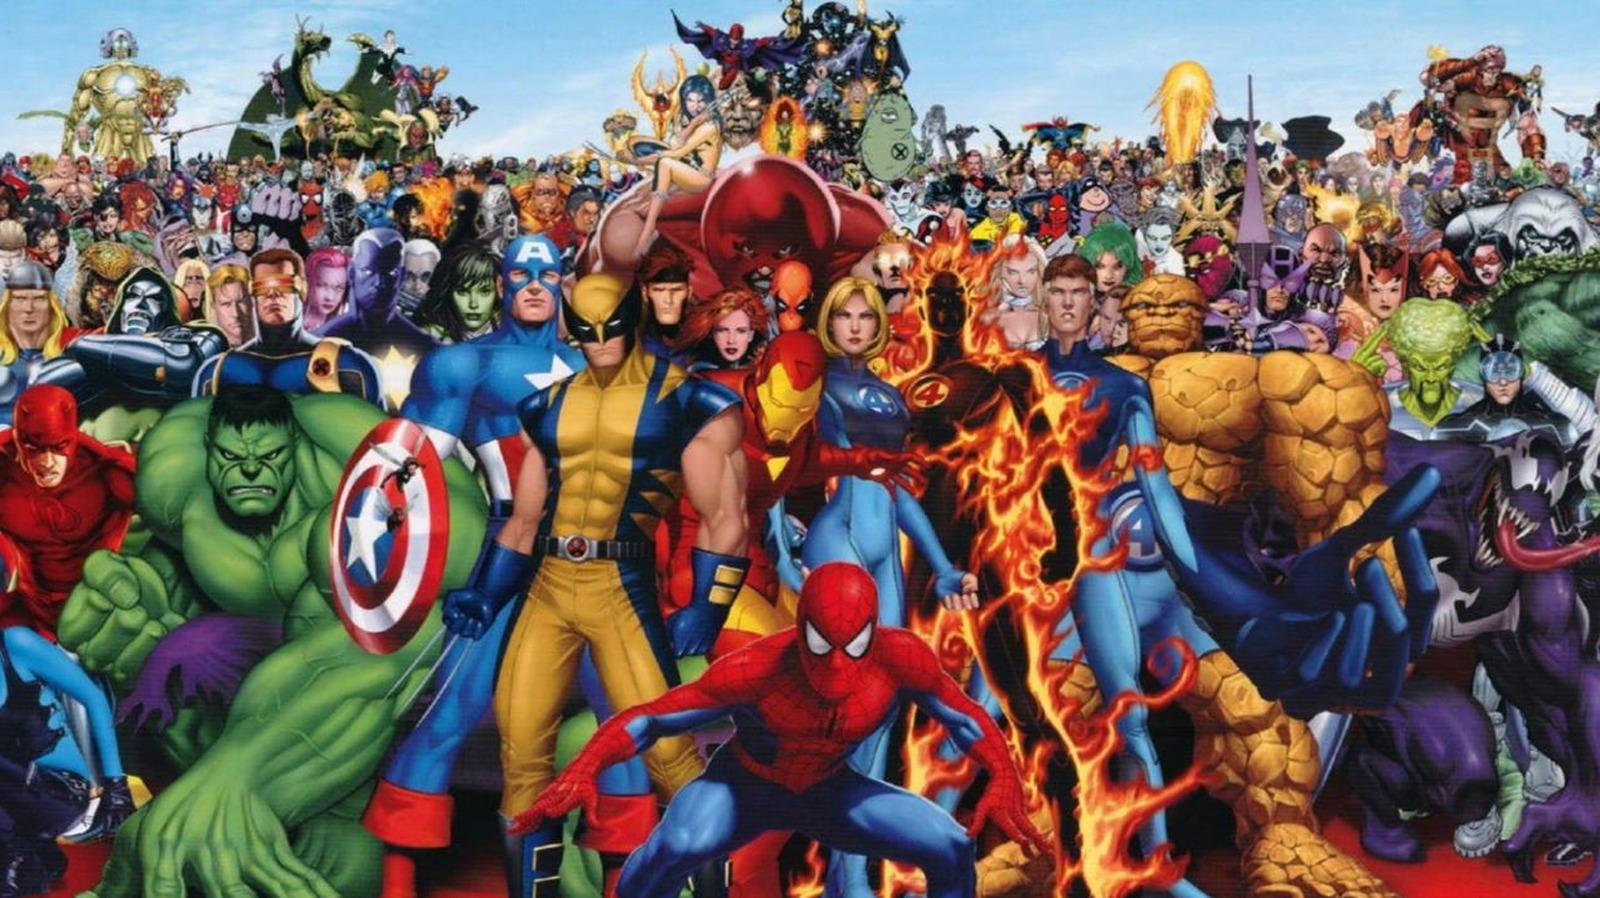 Marvel sinema ve dizi dünyasıyla son yıllarda iyice popülerlik kazanmış durumda. Fakat Marvel'ın asıl merkezi olan çizgi roman dünyası saymakla bitmeyecek kadar süper kahramana sahip. Peki en güçlü Marvel karakterlerini hiç merak ettiniz mi?
İşte Marvel'ın en güçlü 10 karakteri: